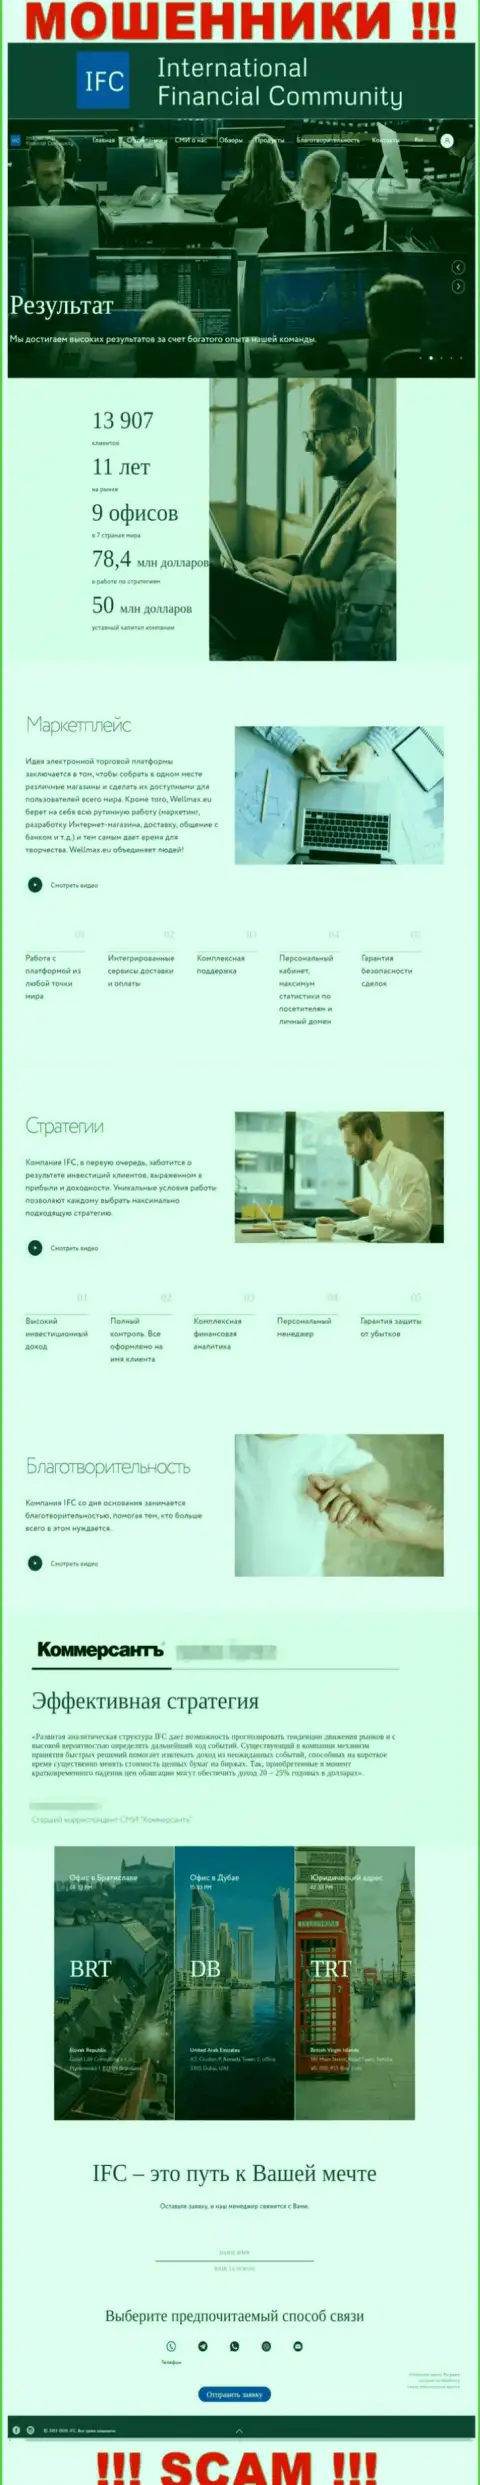 WMIFC Com - это официальный web-портал мошенников ВМИФК